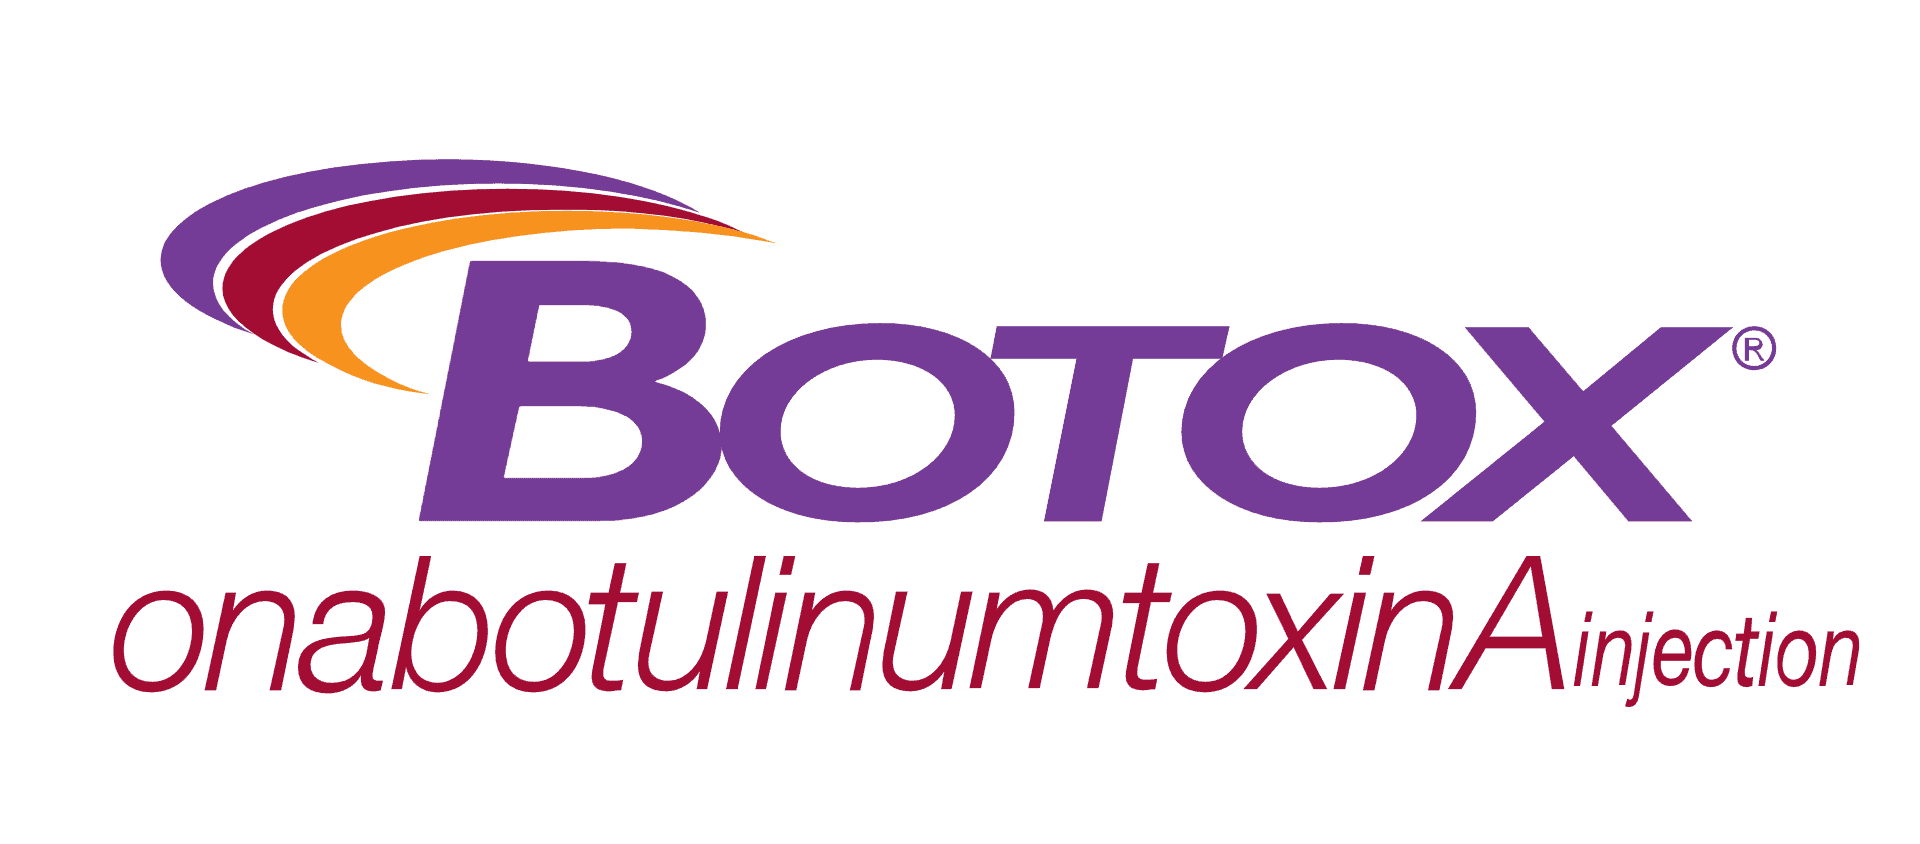 Botox Treatment Types